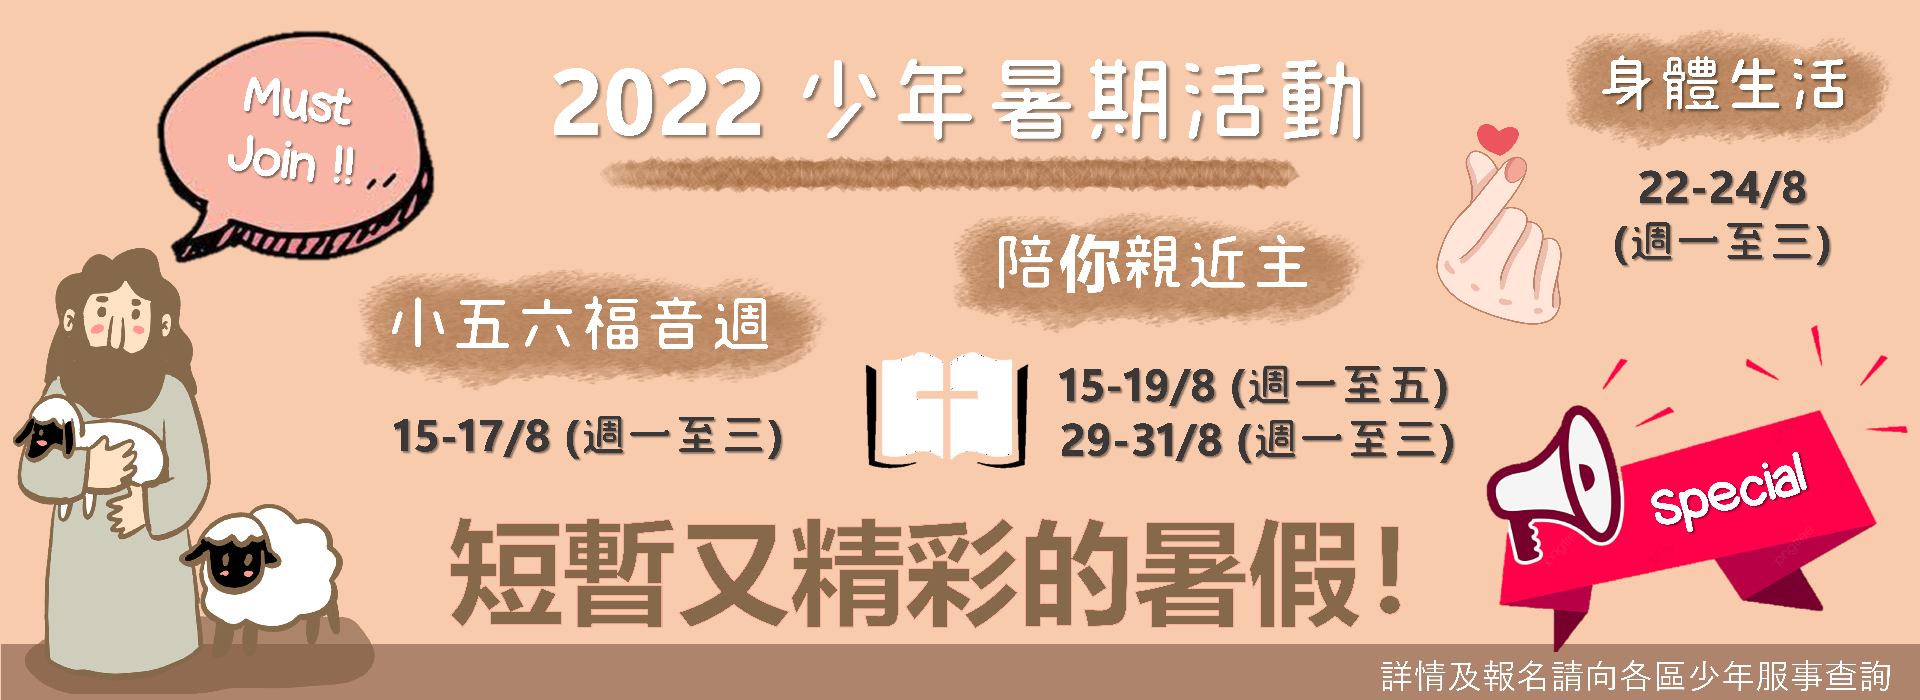 2022暑期banner_Aug_1920X700